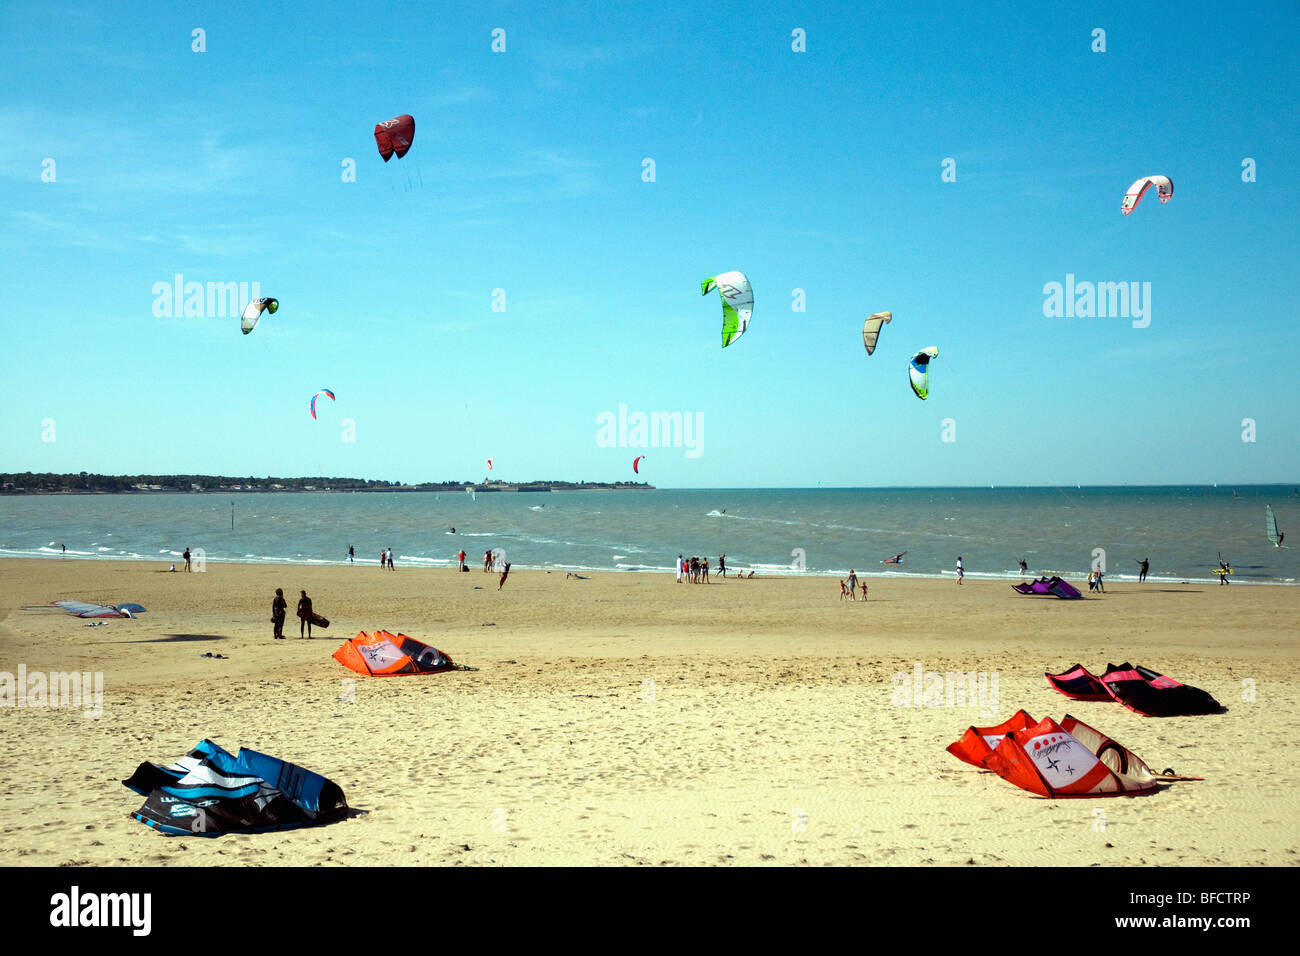 Bassa marea a Rivedoux-Plage all'estremità orientale della Francia Ile de Ré offre le condizioni ideali per praticare il kitesurf dolce Foto Stock